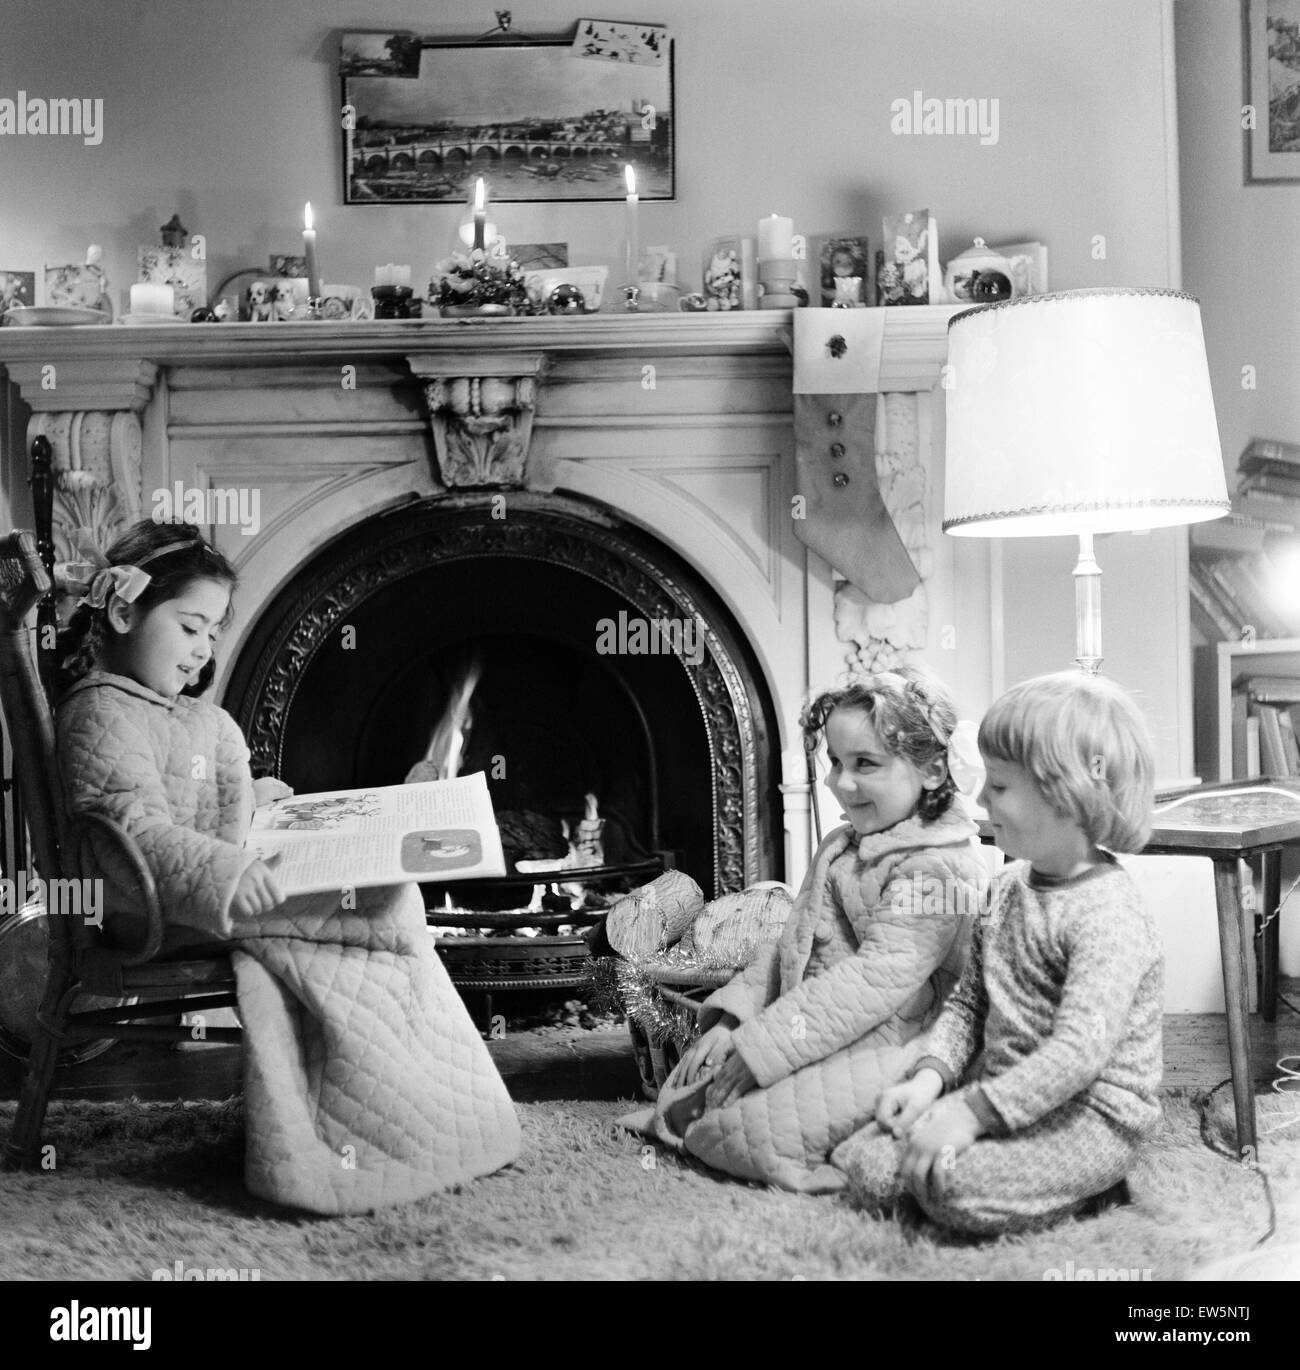 Heiligabend, Kinder vor dem Schlafengehen Geschichten lesen, während sie, Santa, Newcastle, Tyne and Wear warten. Bild 18. Dezember 1974 stellte. Stockfoto